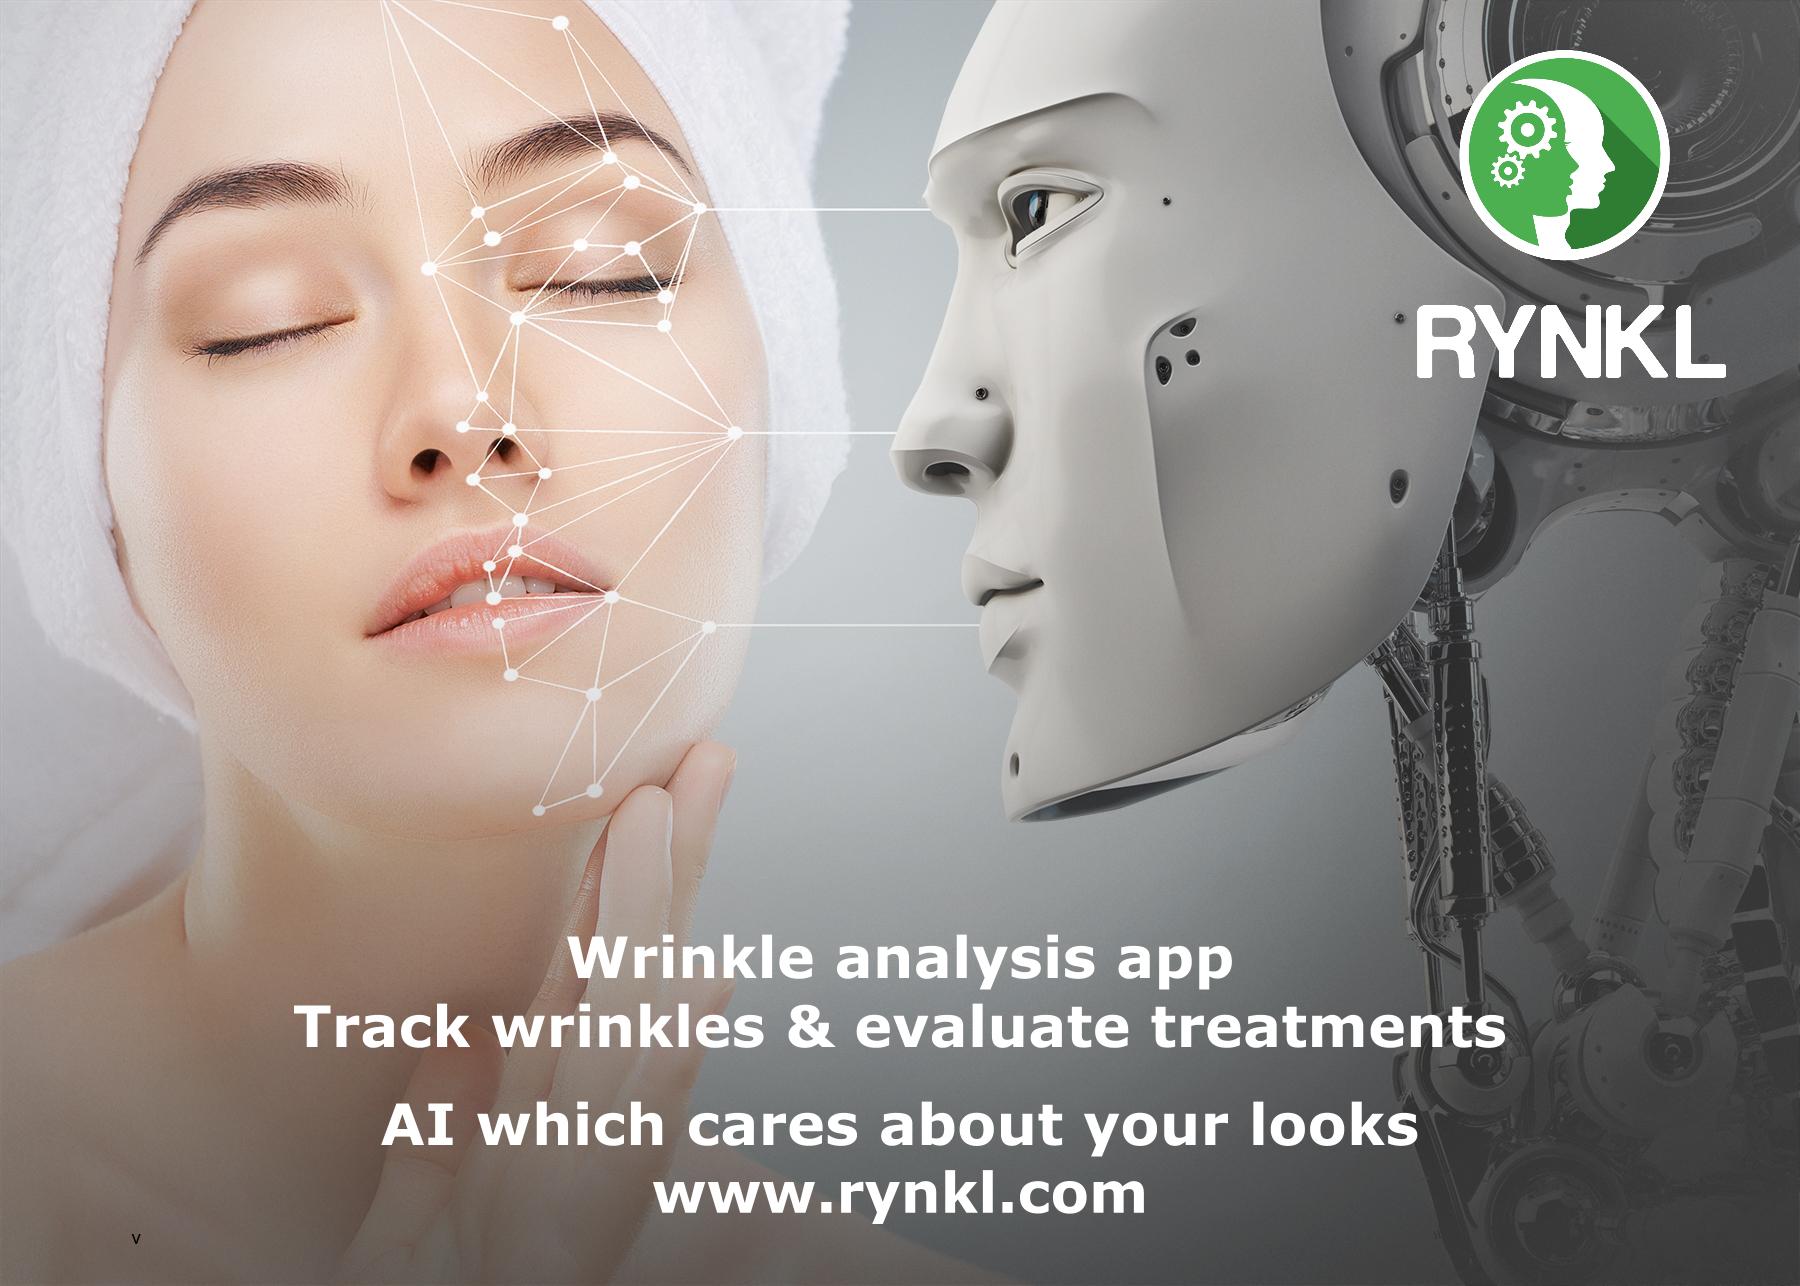 RYNKL wrinkle analysis app